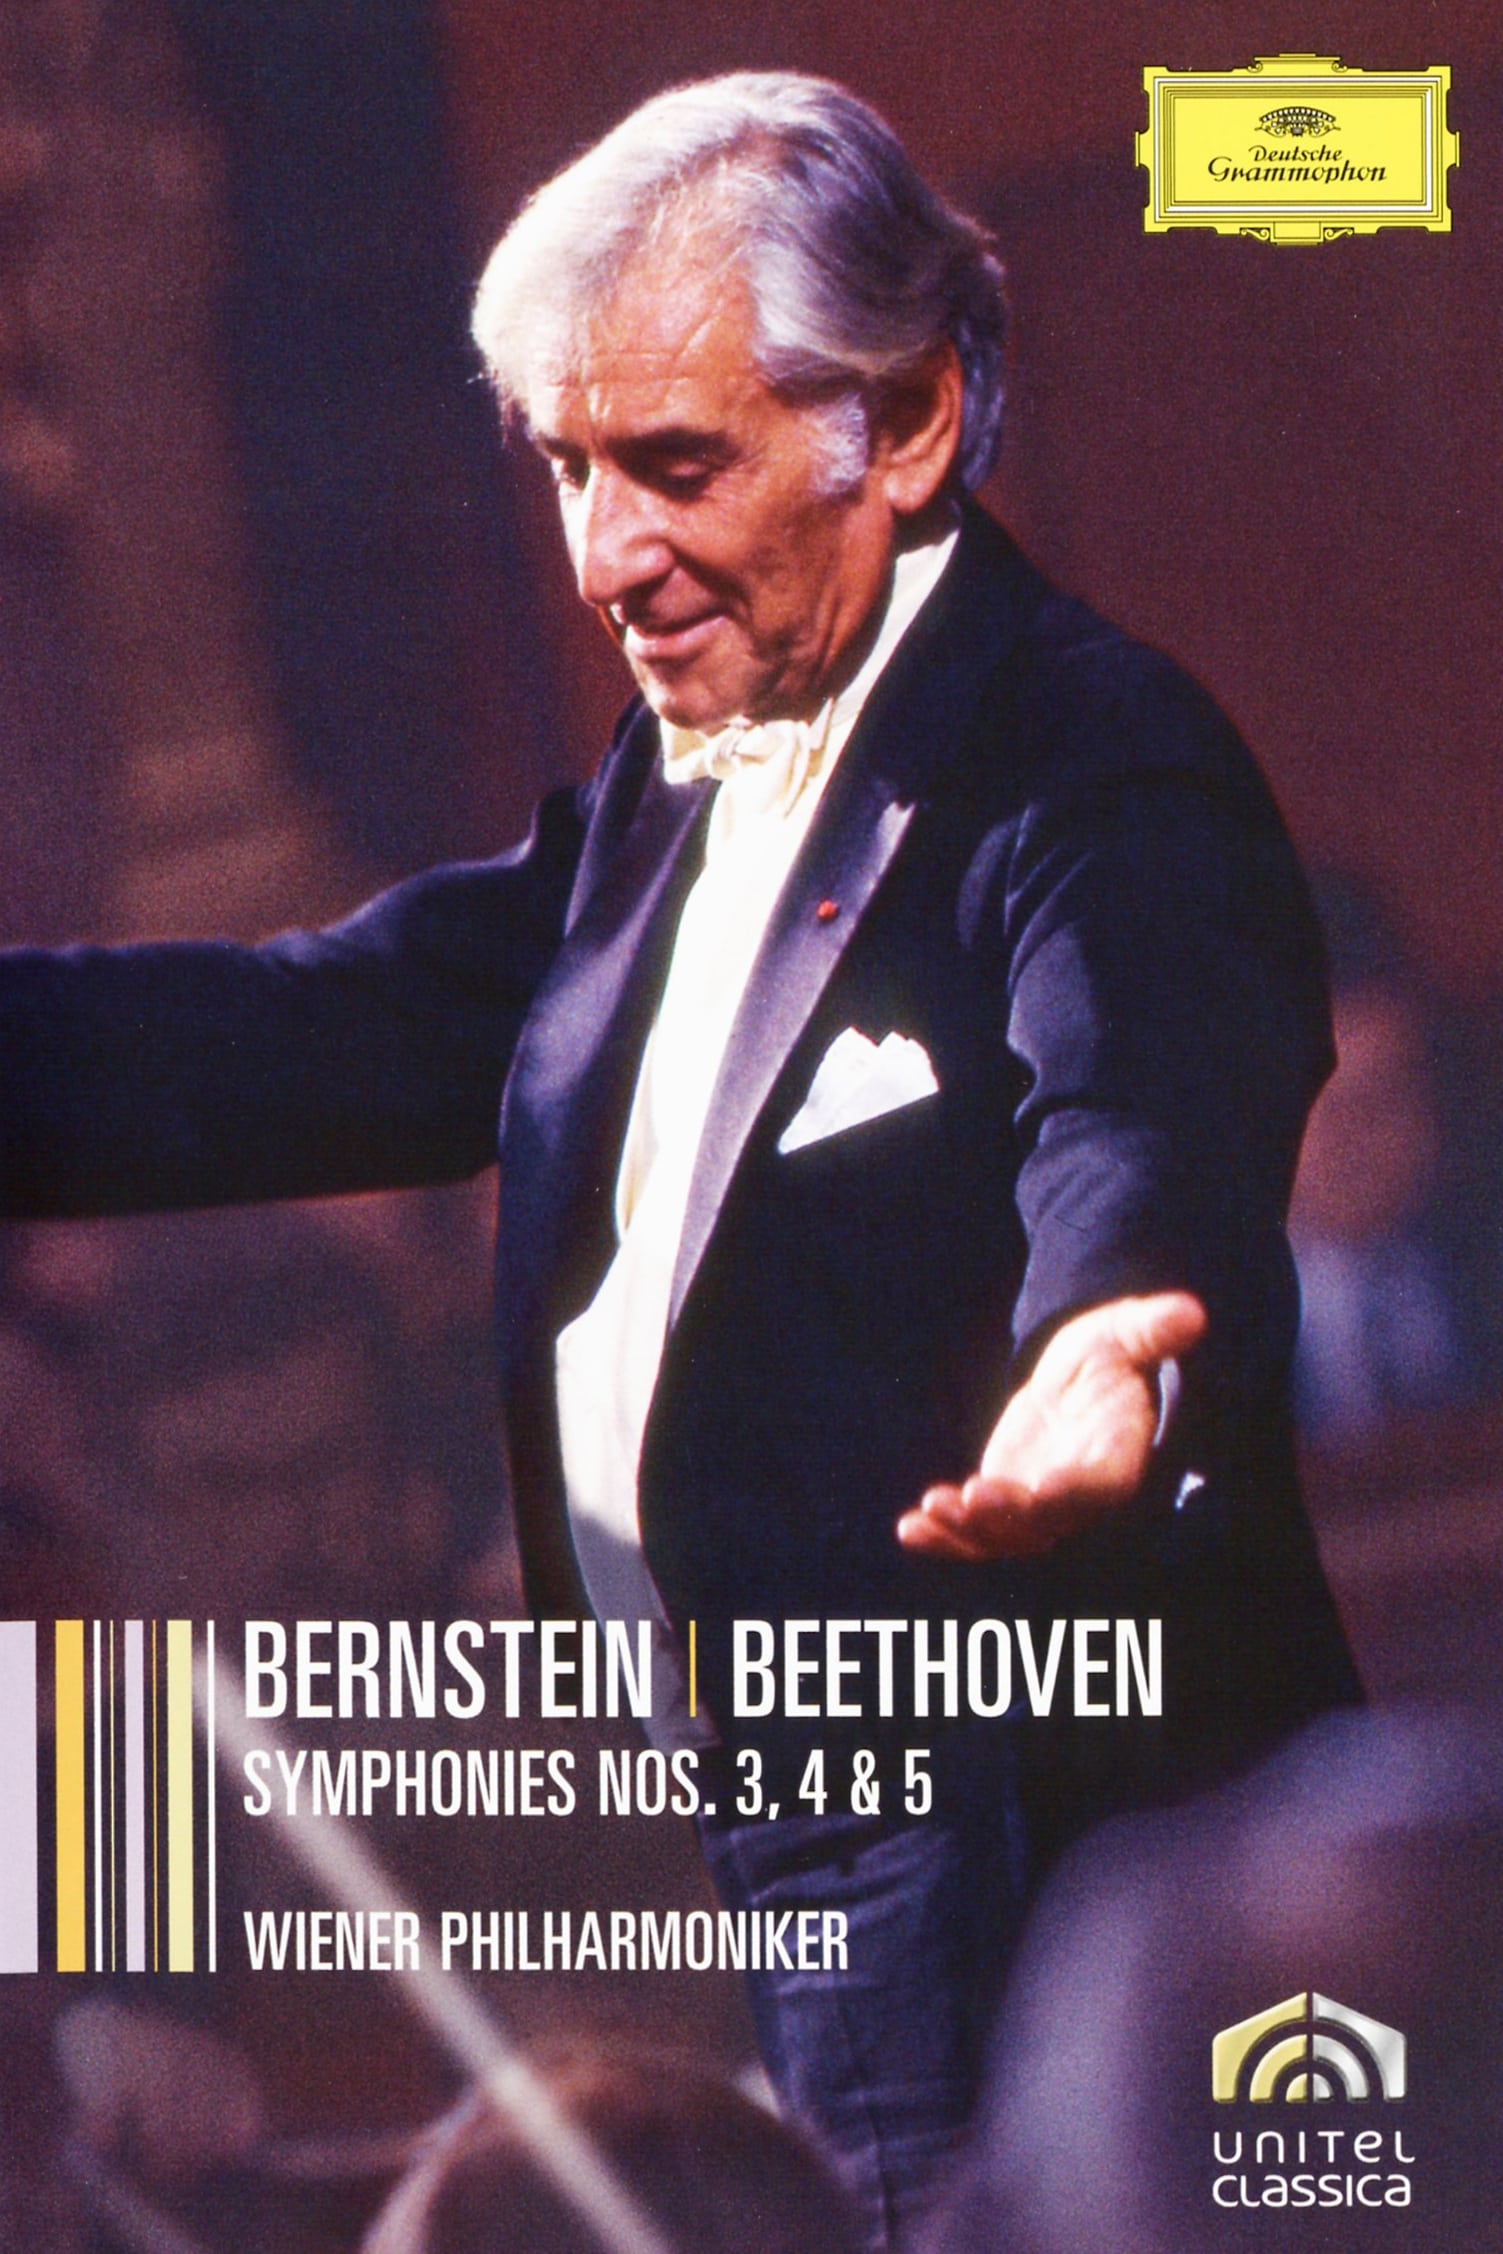 Bernstein | Beethoven Symphonies 3,4,5